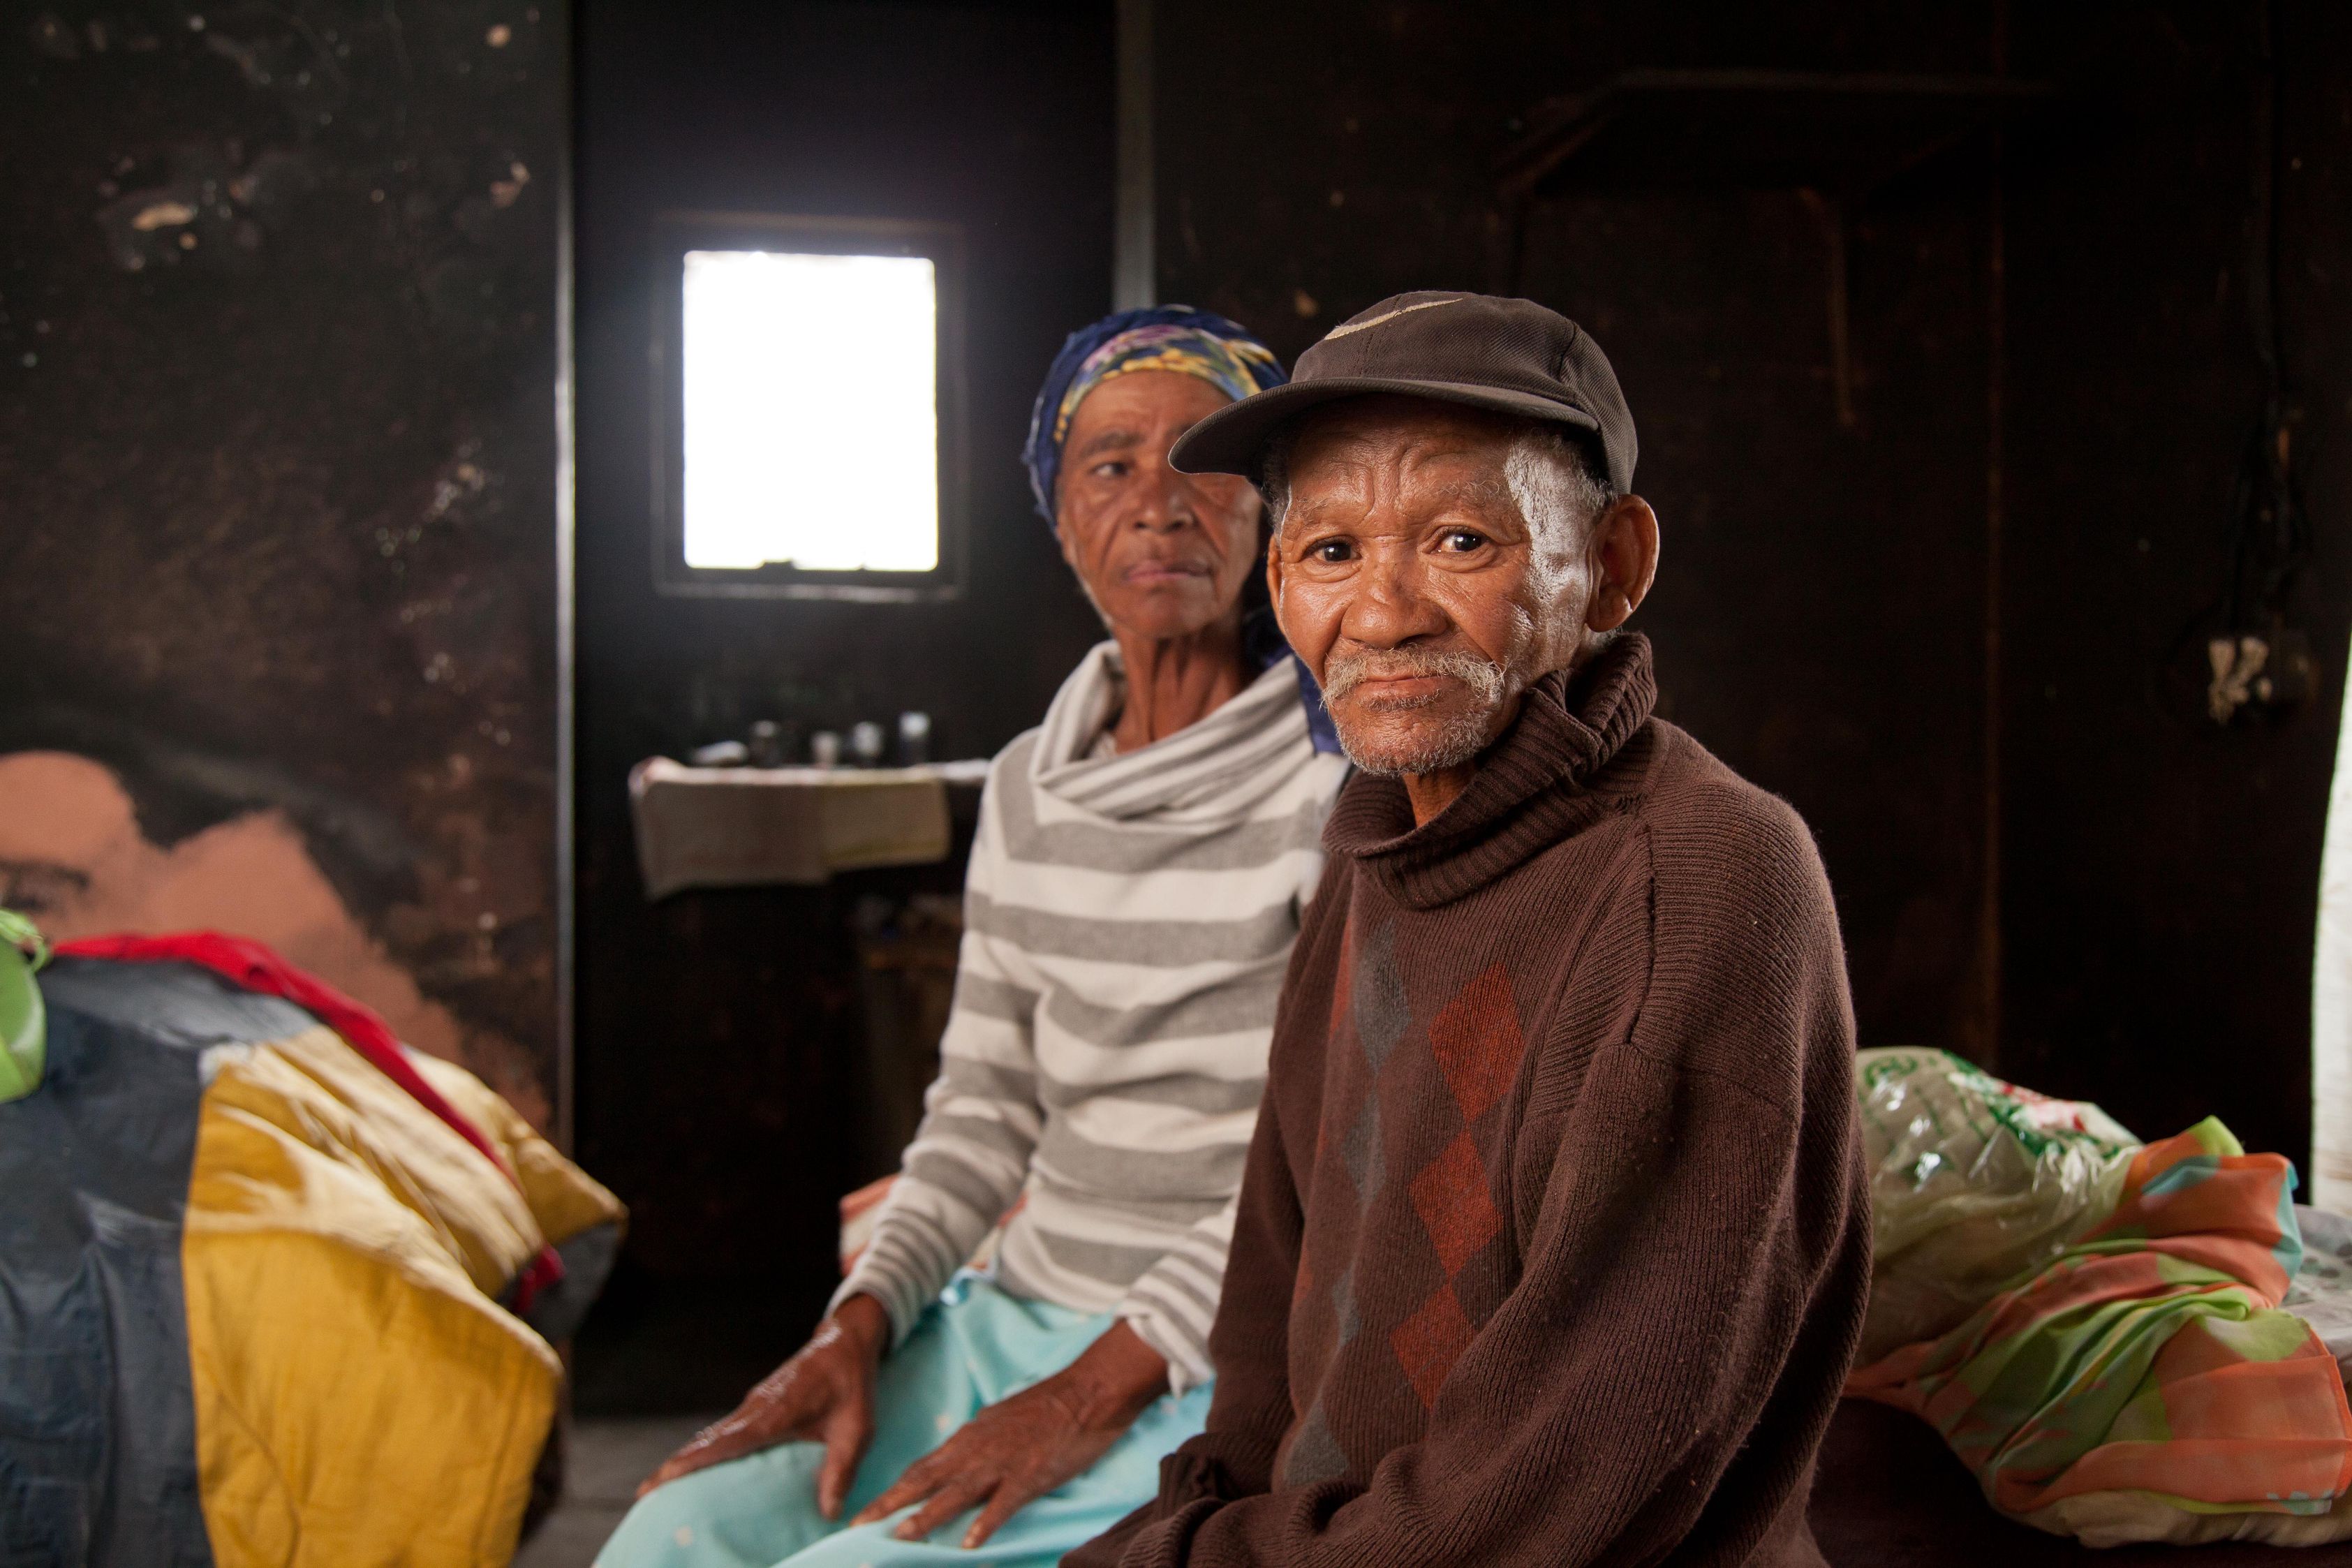 Ein älteres Paar Landarbeiter:innen sitzt im Inneren ihres Hauses. Der Mann schaut uns direkt an. Die Wände scheinen russgeschwärzt, man sieht Armut aber auch Liebe zum Heim.